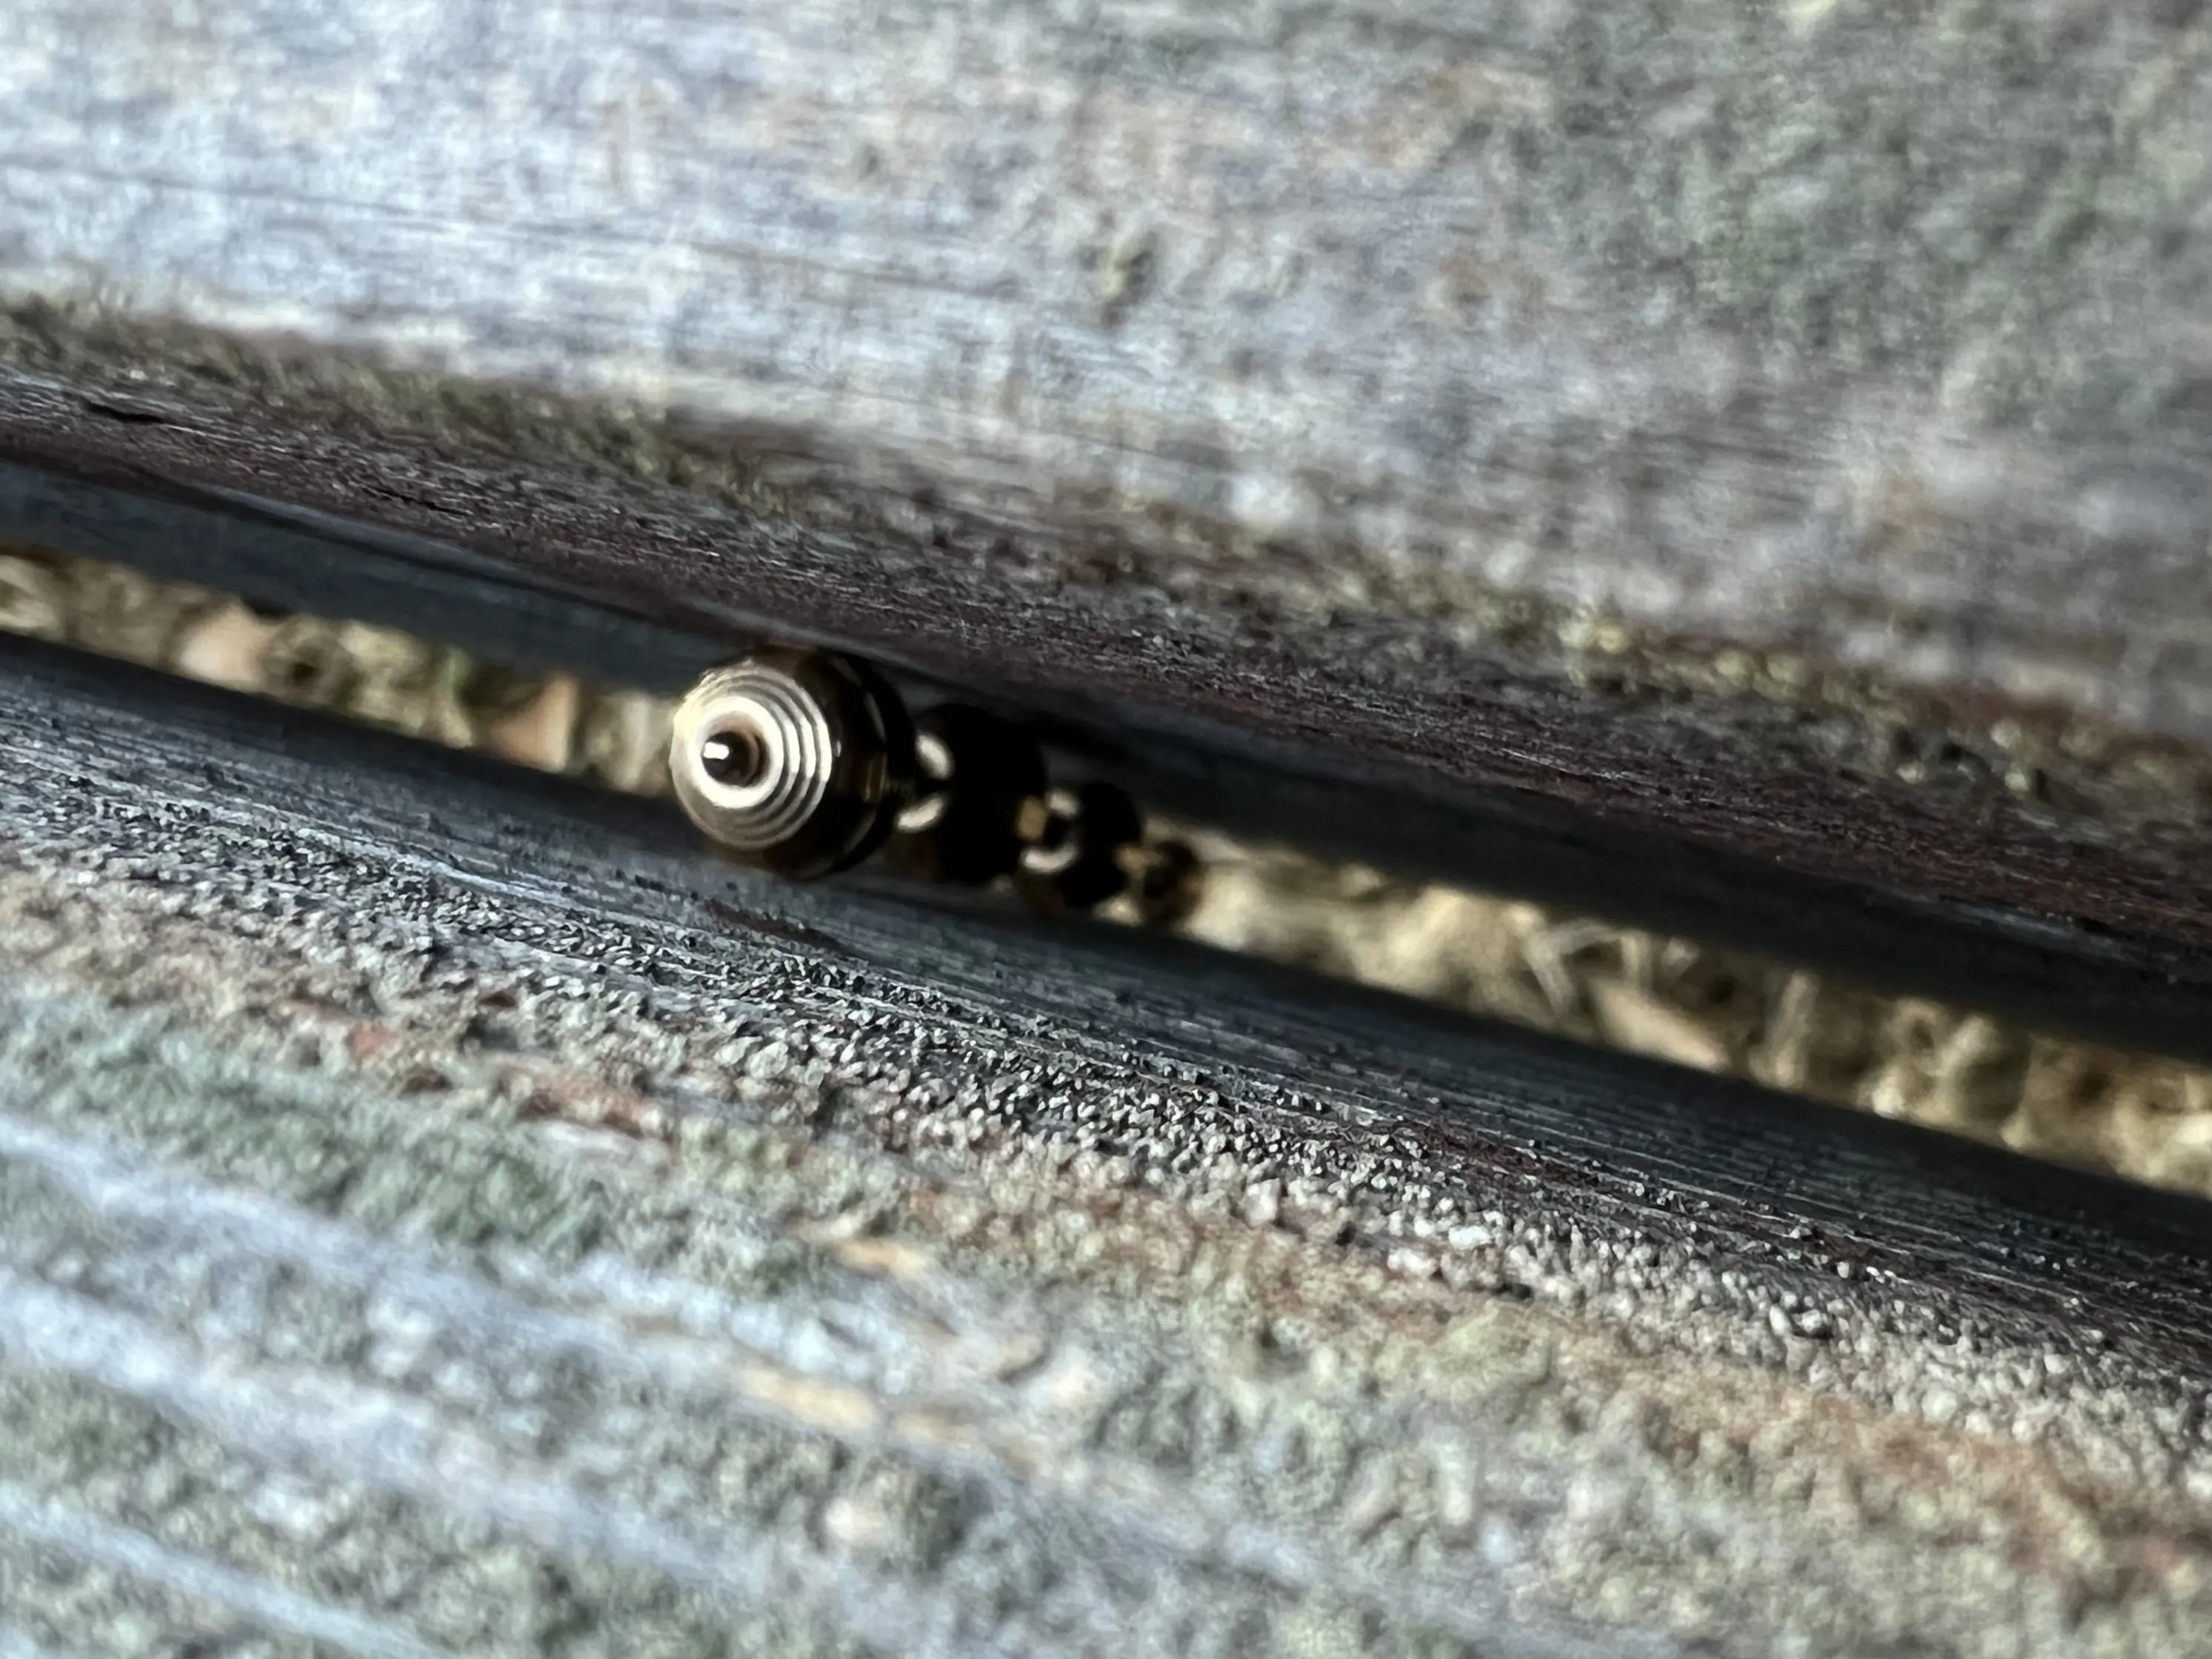 Pendant lodged inside a bench slat